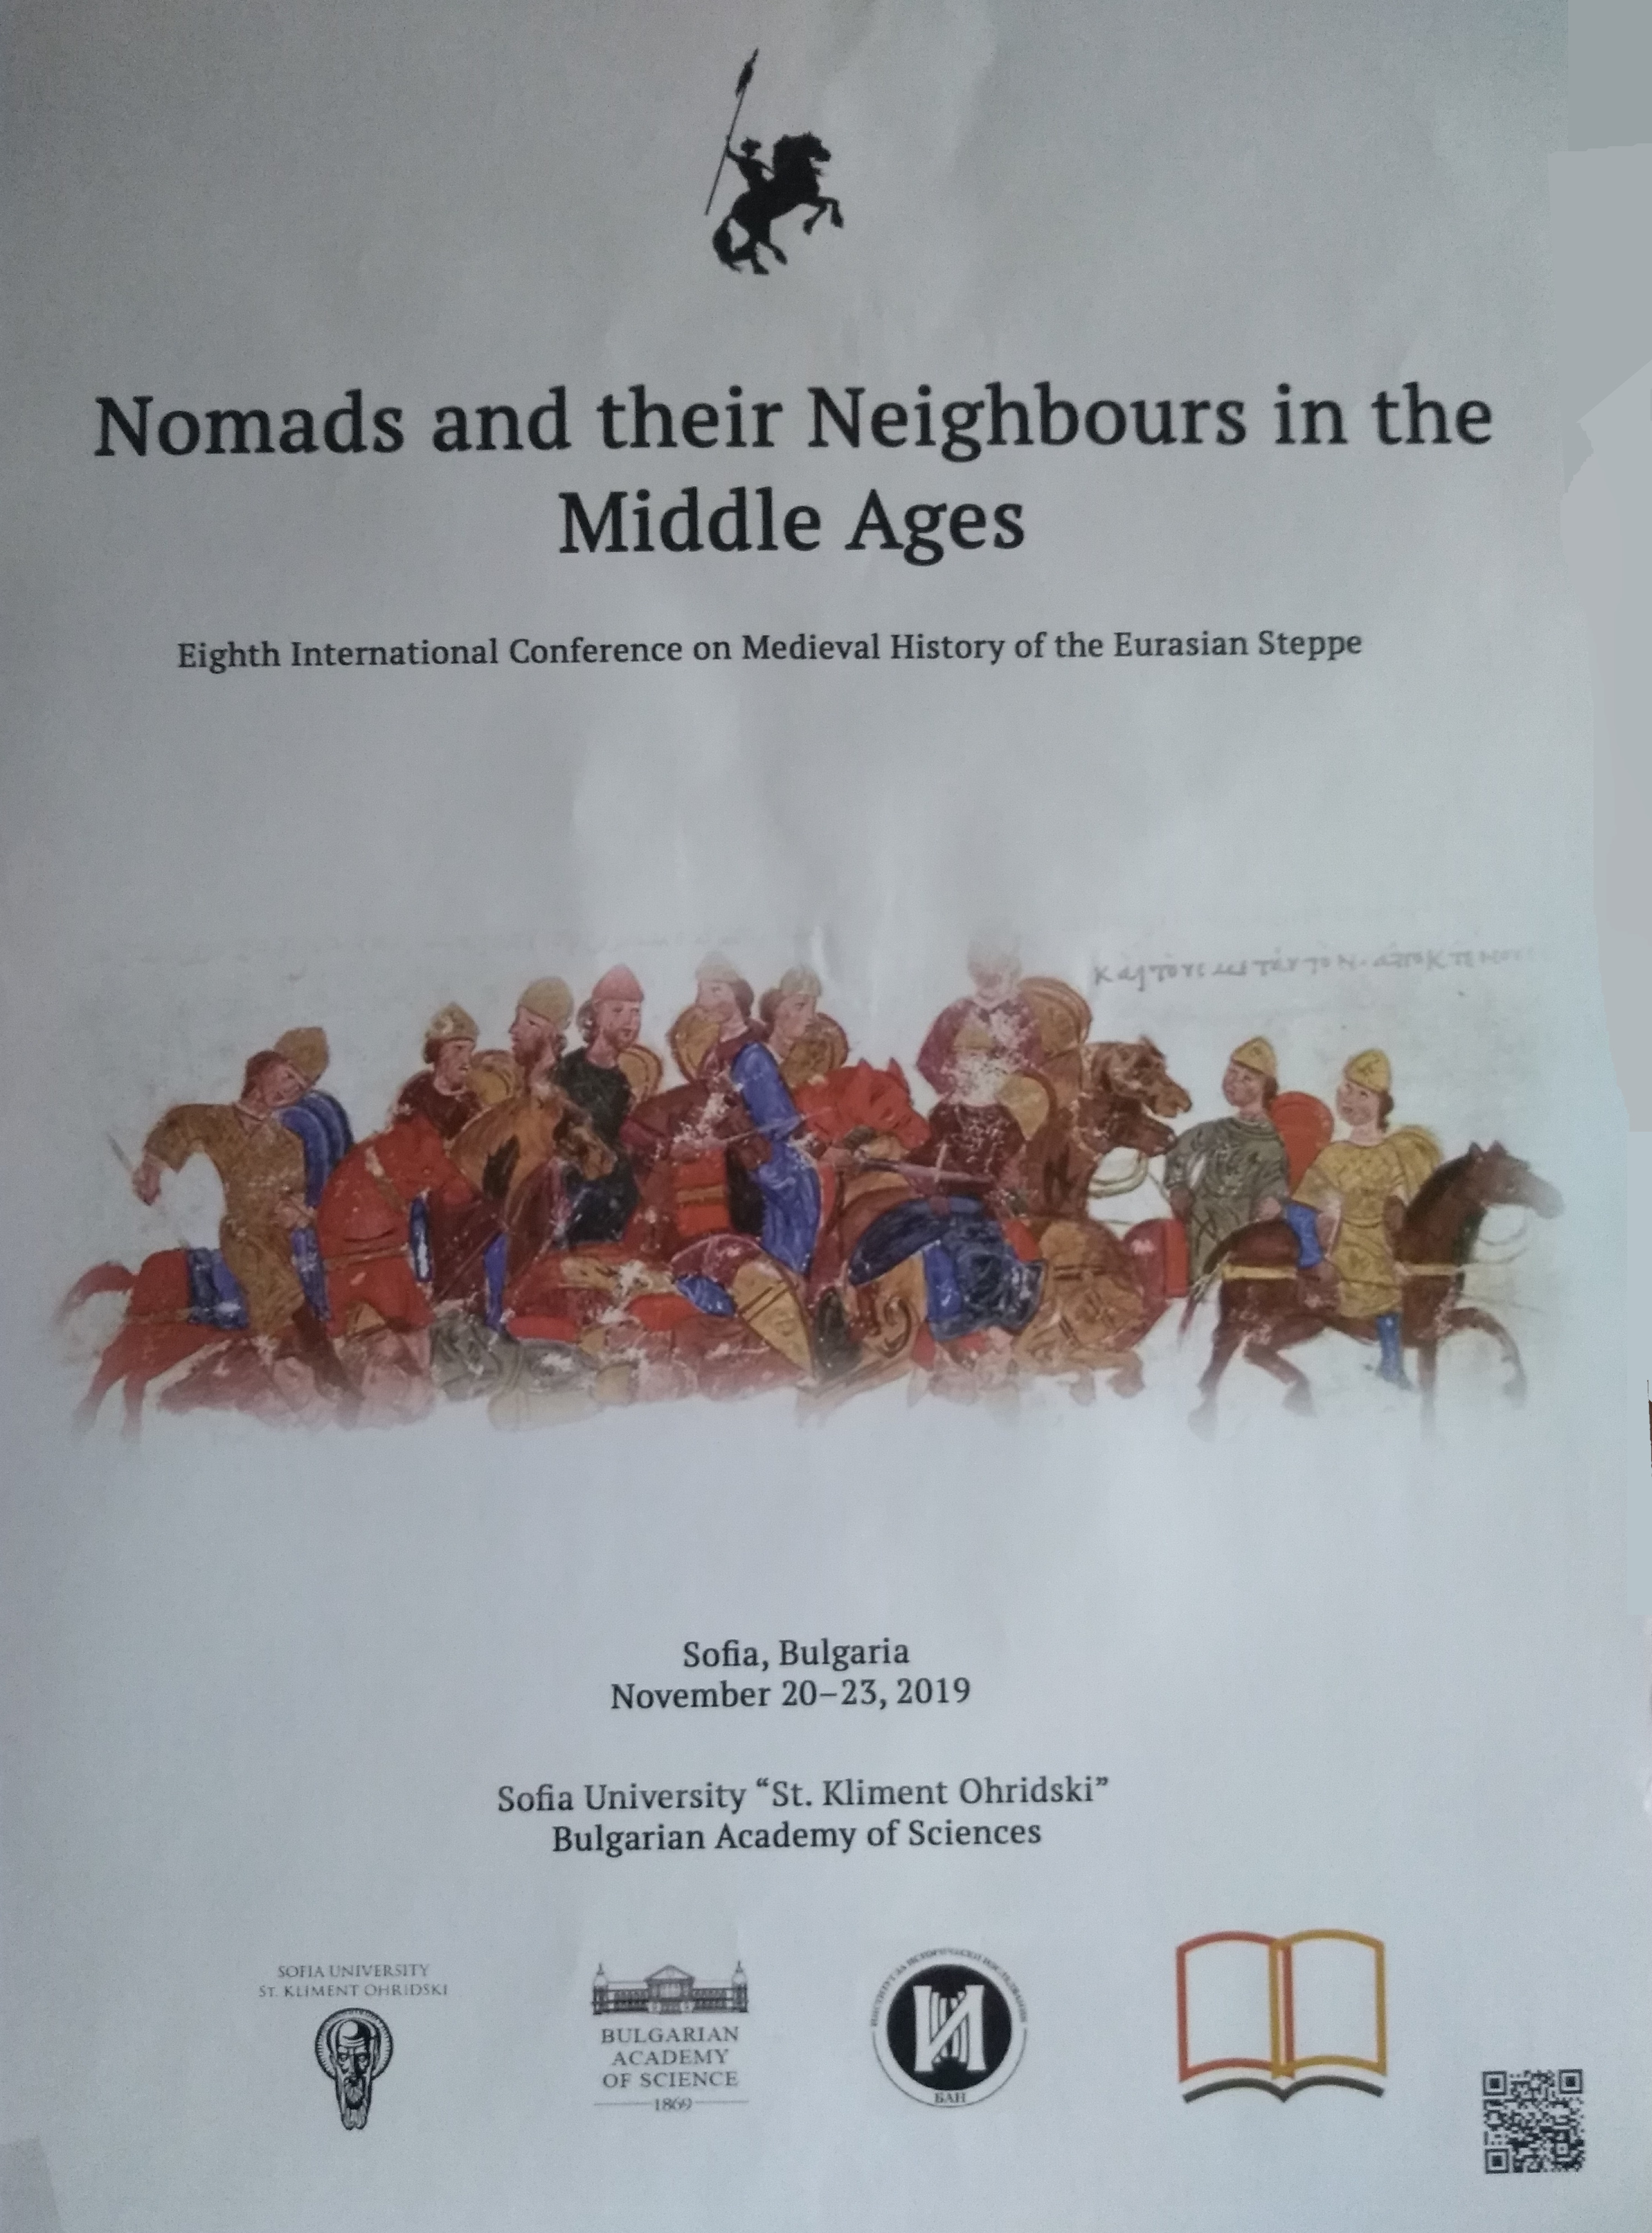 Eurasian Nomads Poster 2019